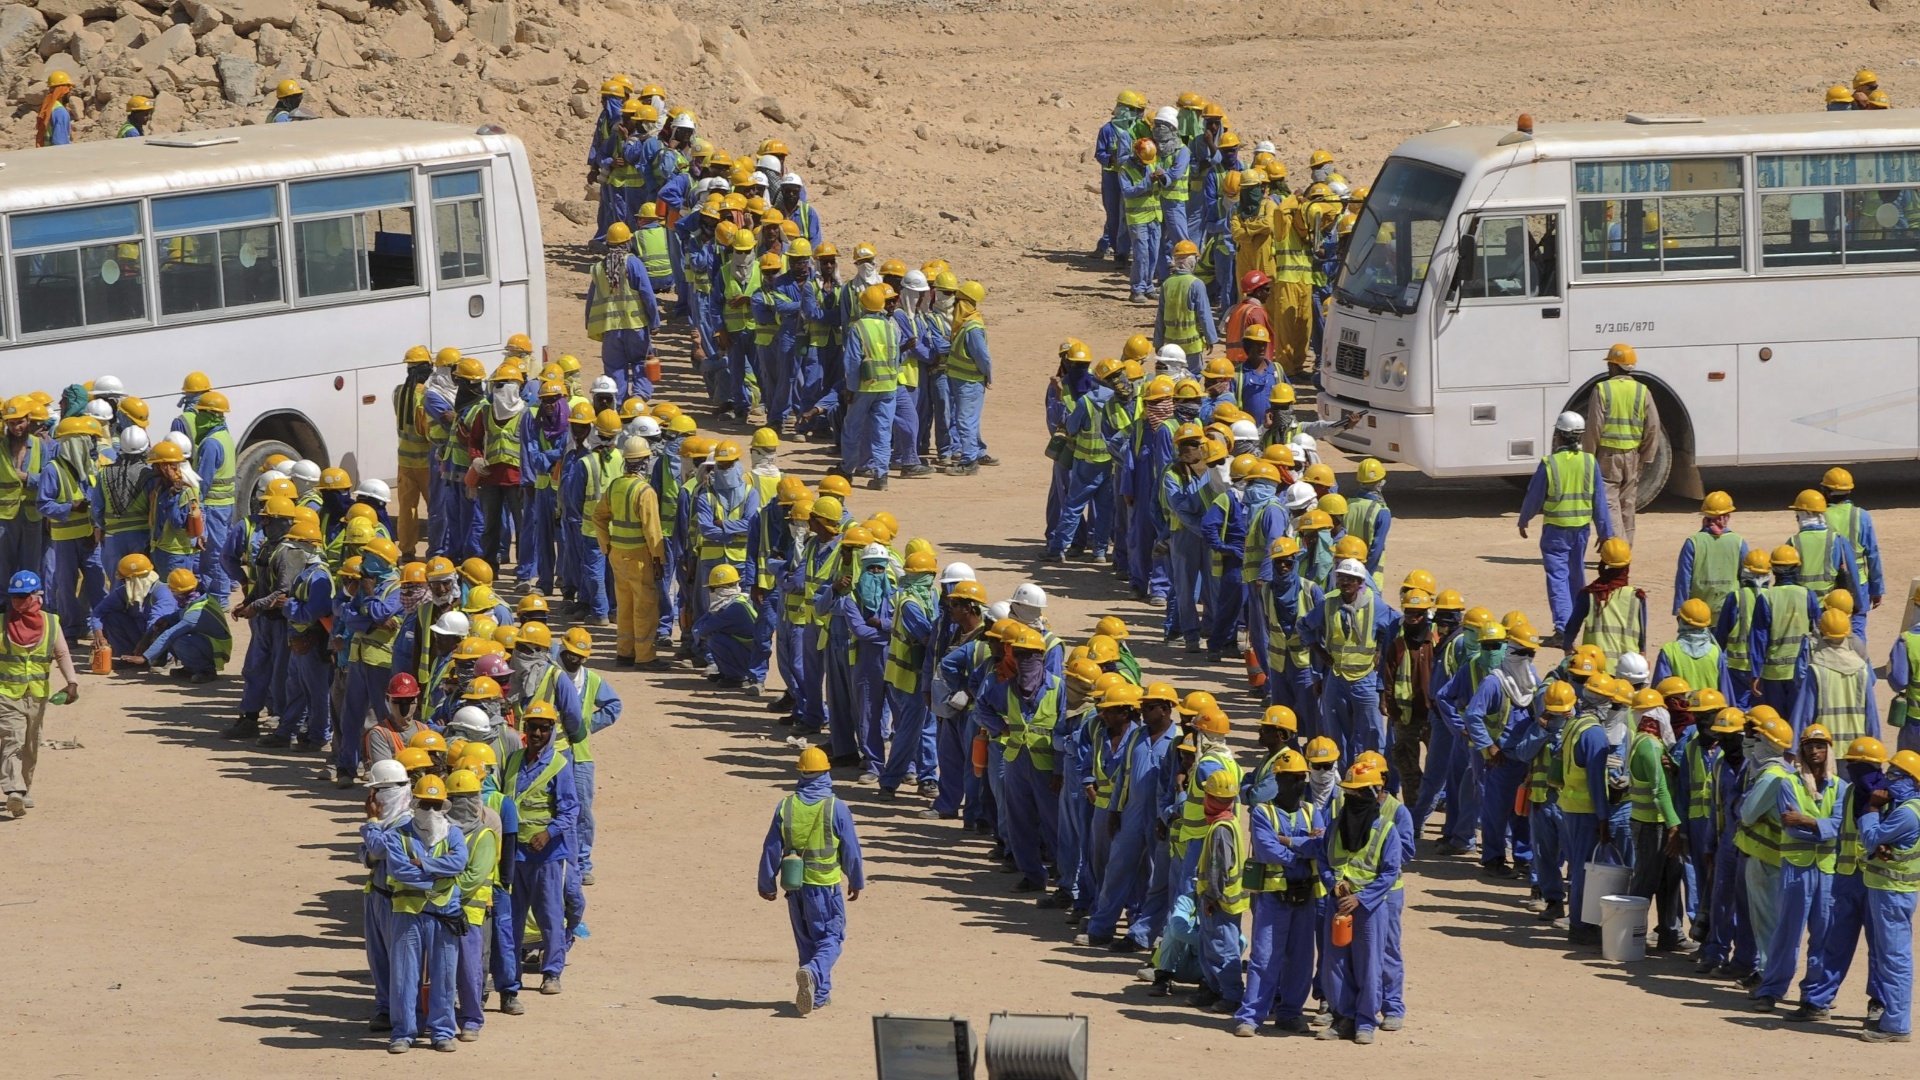 19112013---trabalhadores-imigrantes-em-obra-da-copa-de-2022-no-qatar-1385060652507_1920x1080.jpg